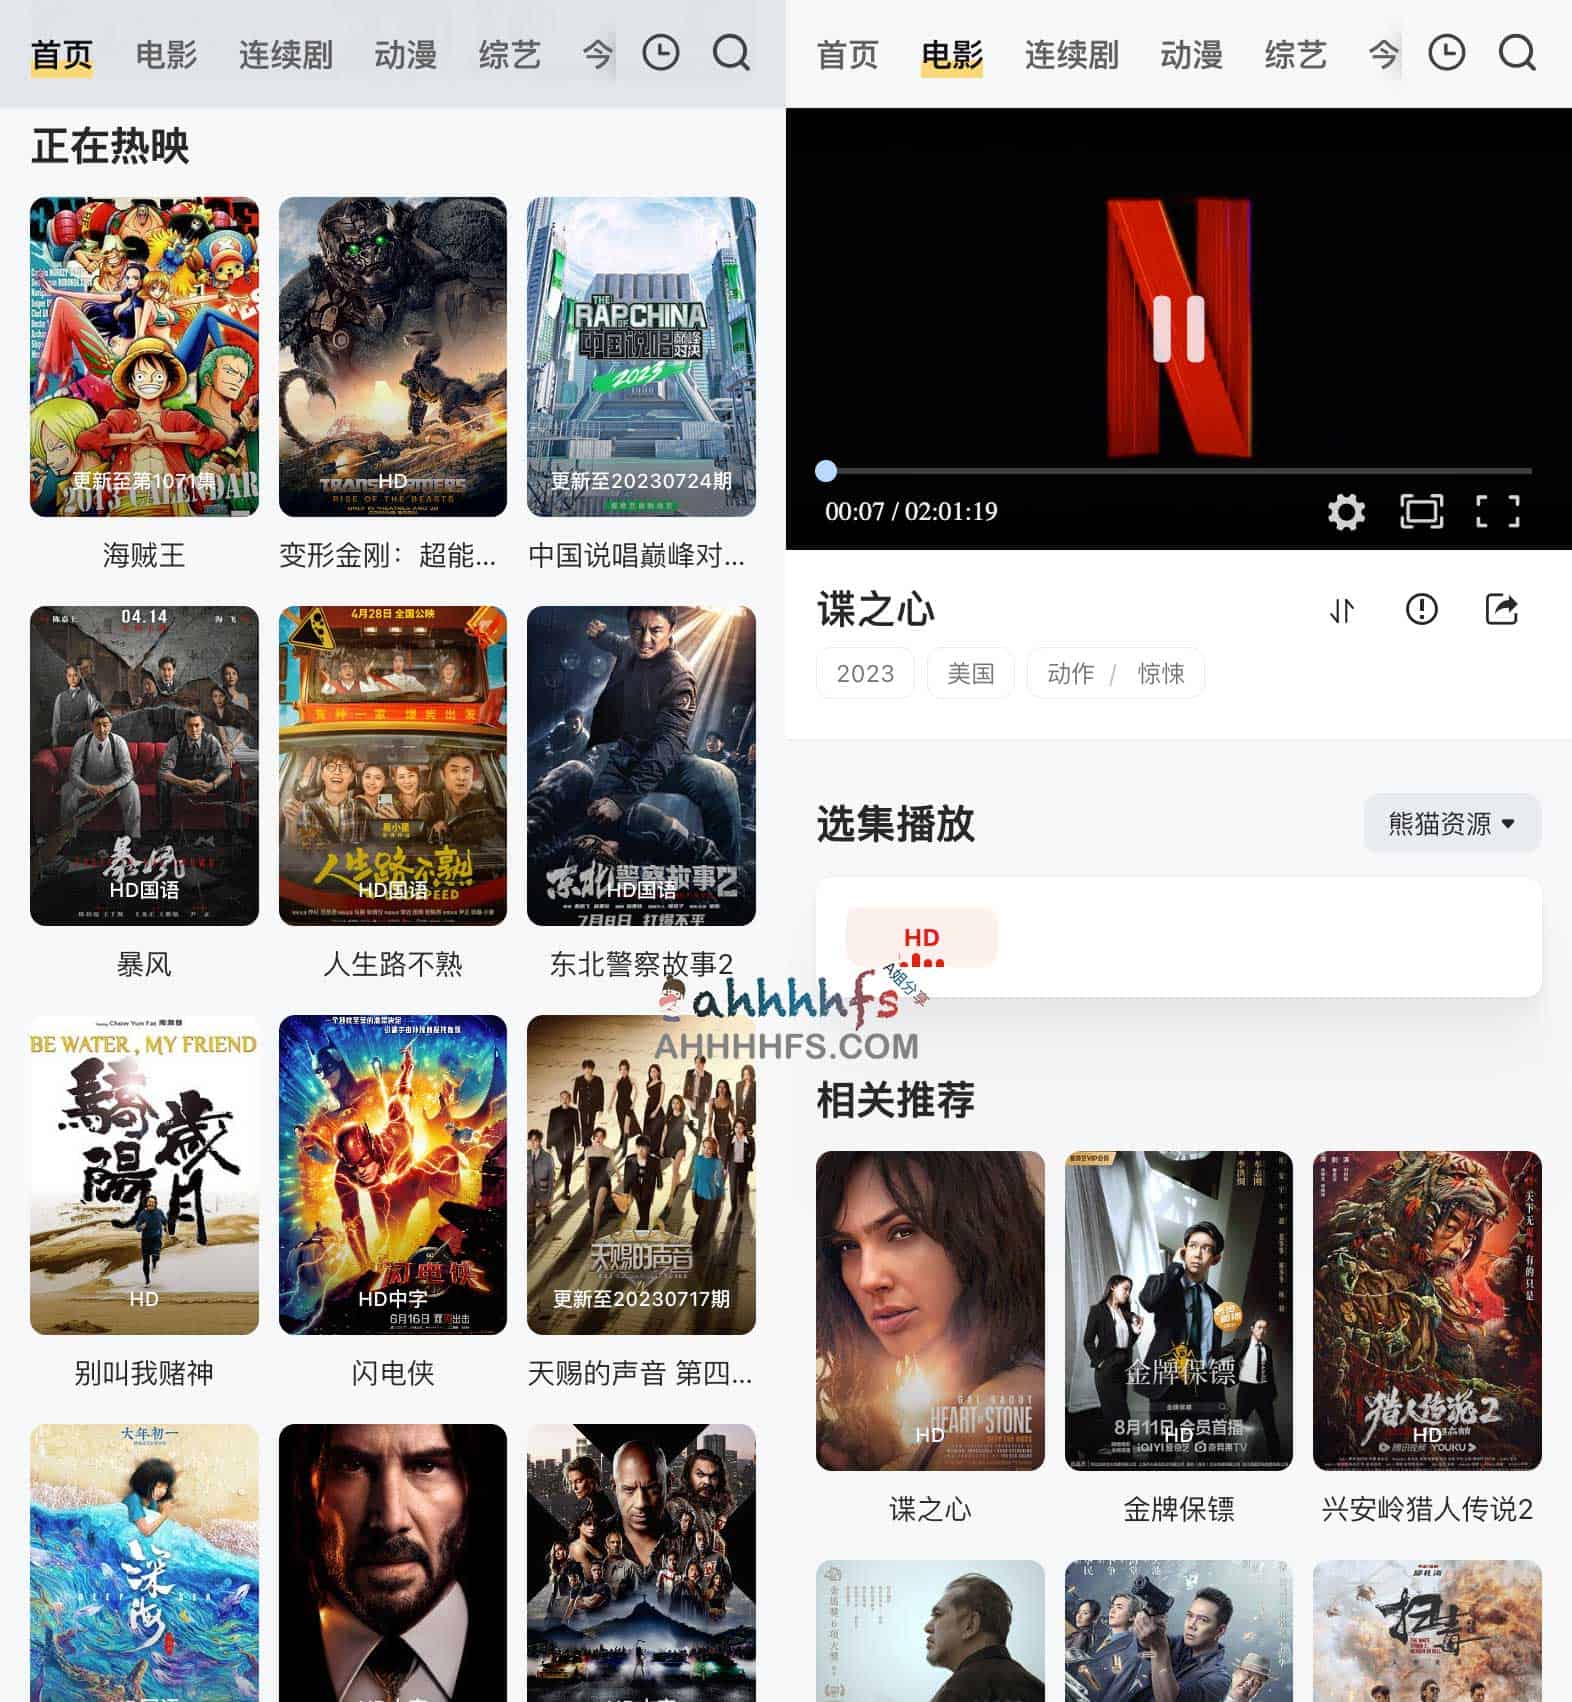 熊猫影院-免费海外华人影院 干净的在线影视网站